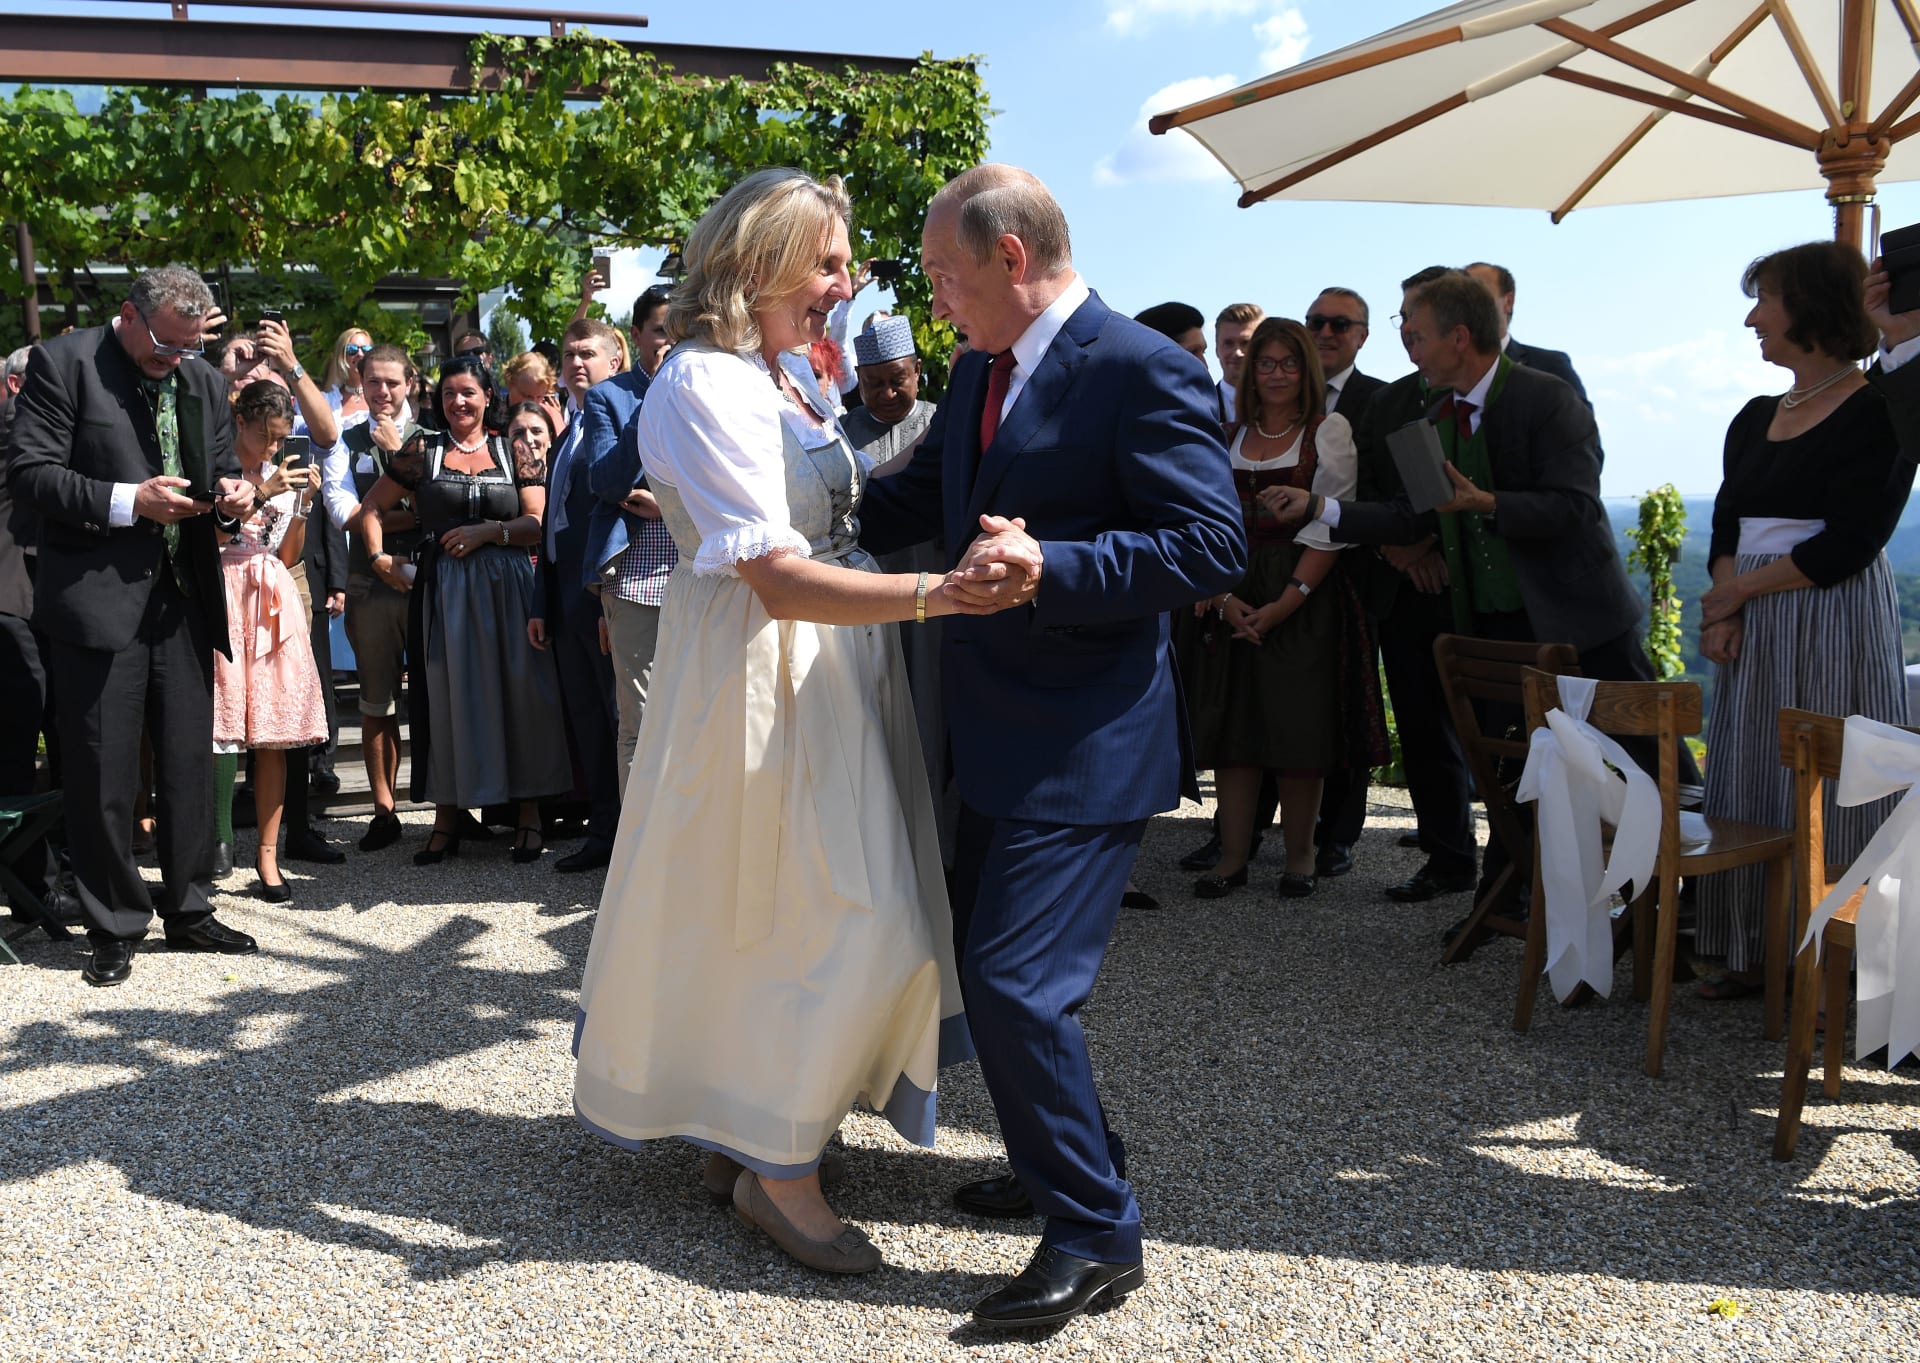 Bývalá rakouská ministryně zahraničí Karin Kneisslová tancuje s ruským prezidentem Vladimirem Putinem na své svatbě, která se konala 18. srpna 2018 ve městečku Gamlitz na jihu Rakouska.